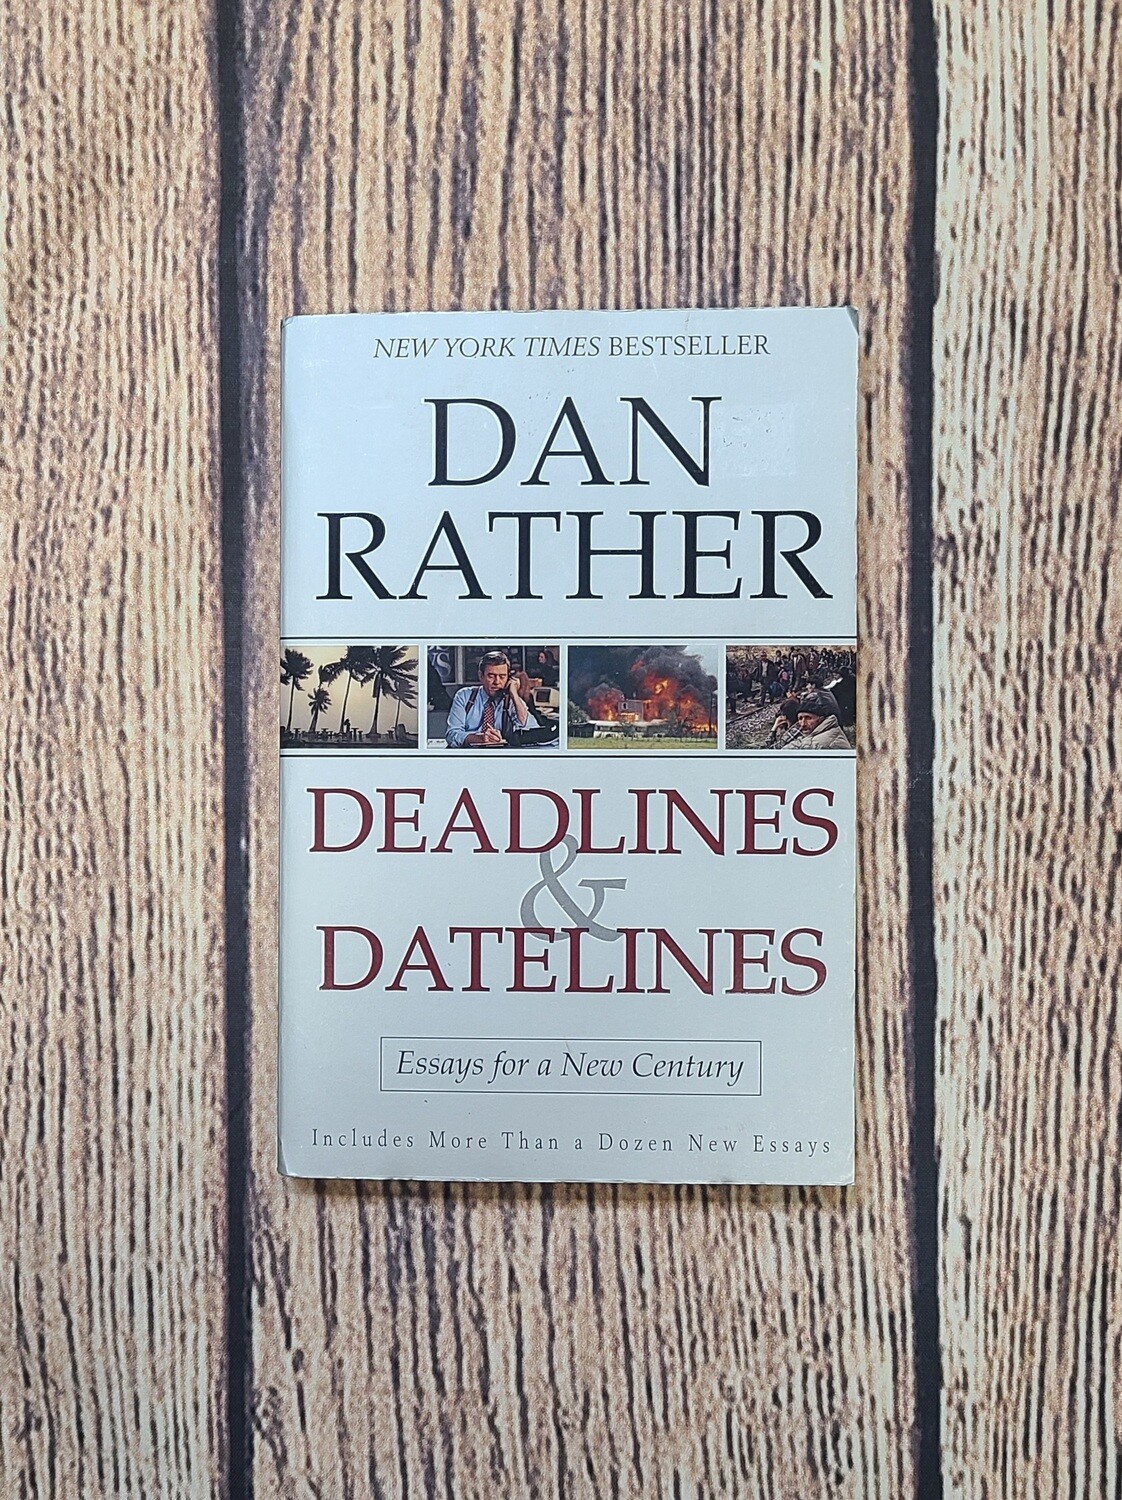 Deadlines & Datelines by Dan Rather